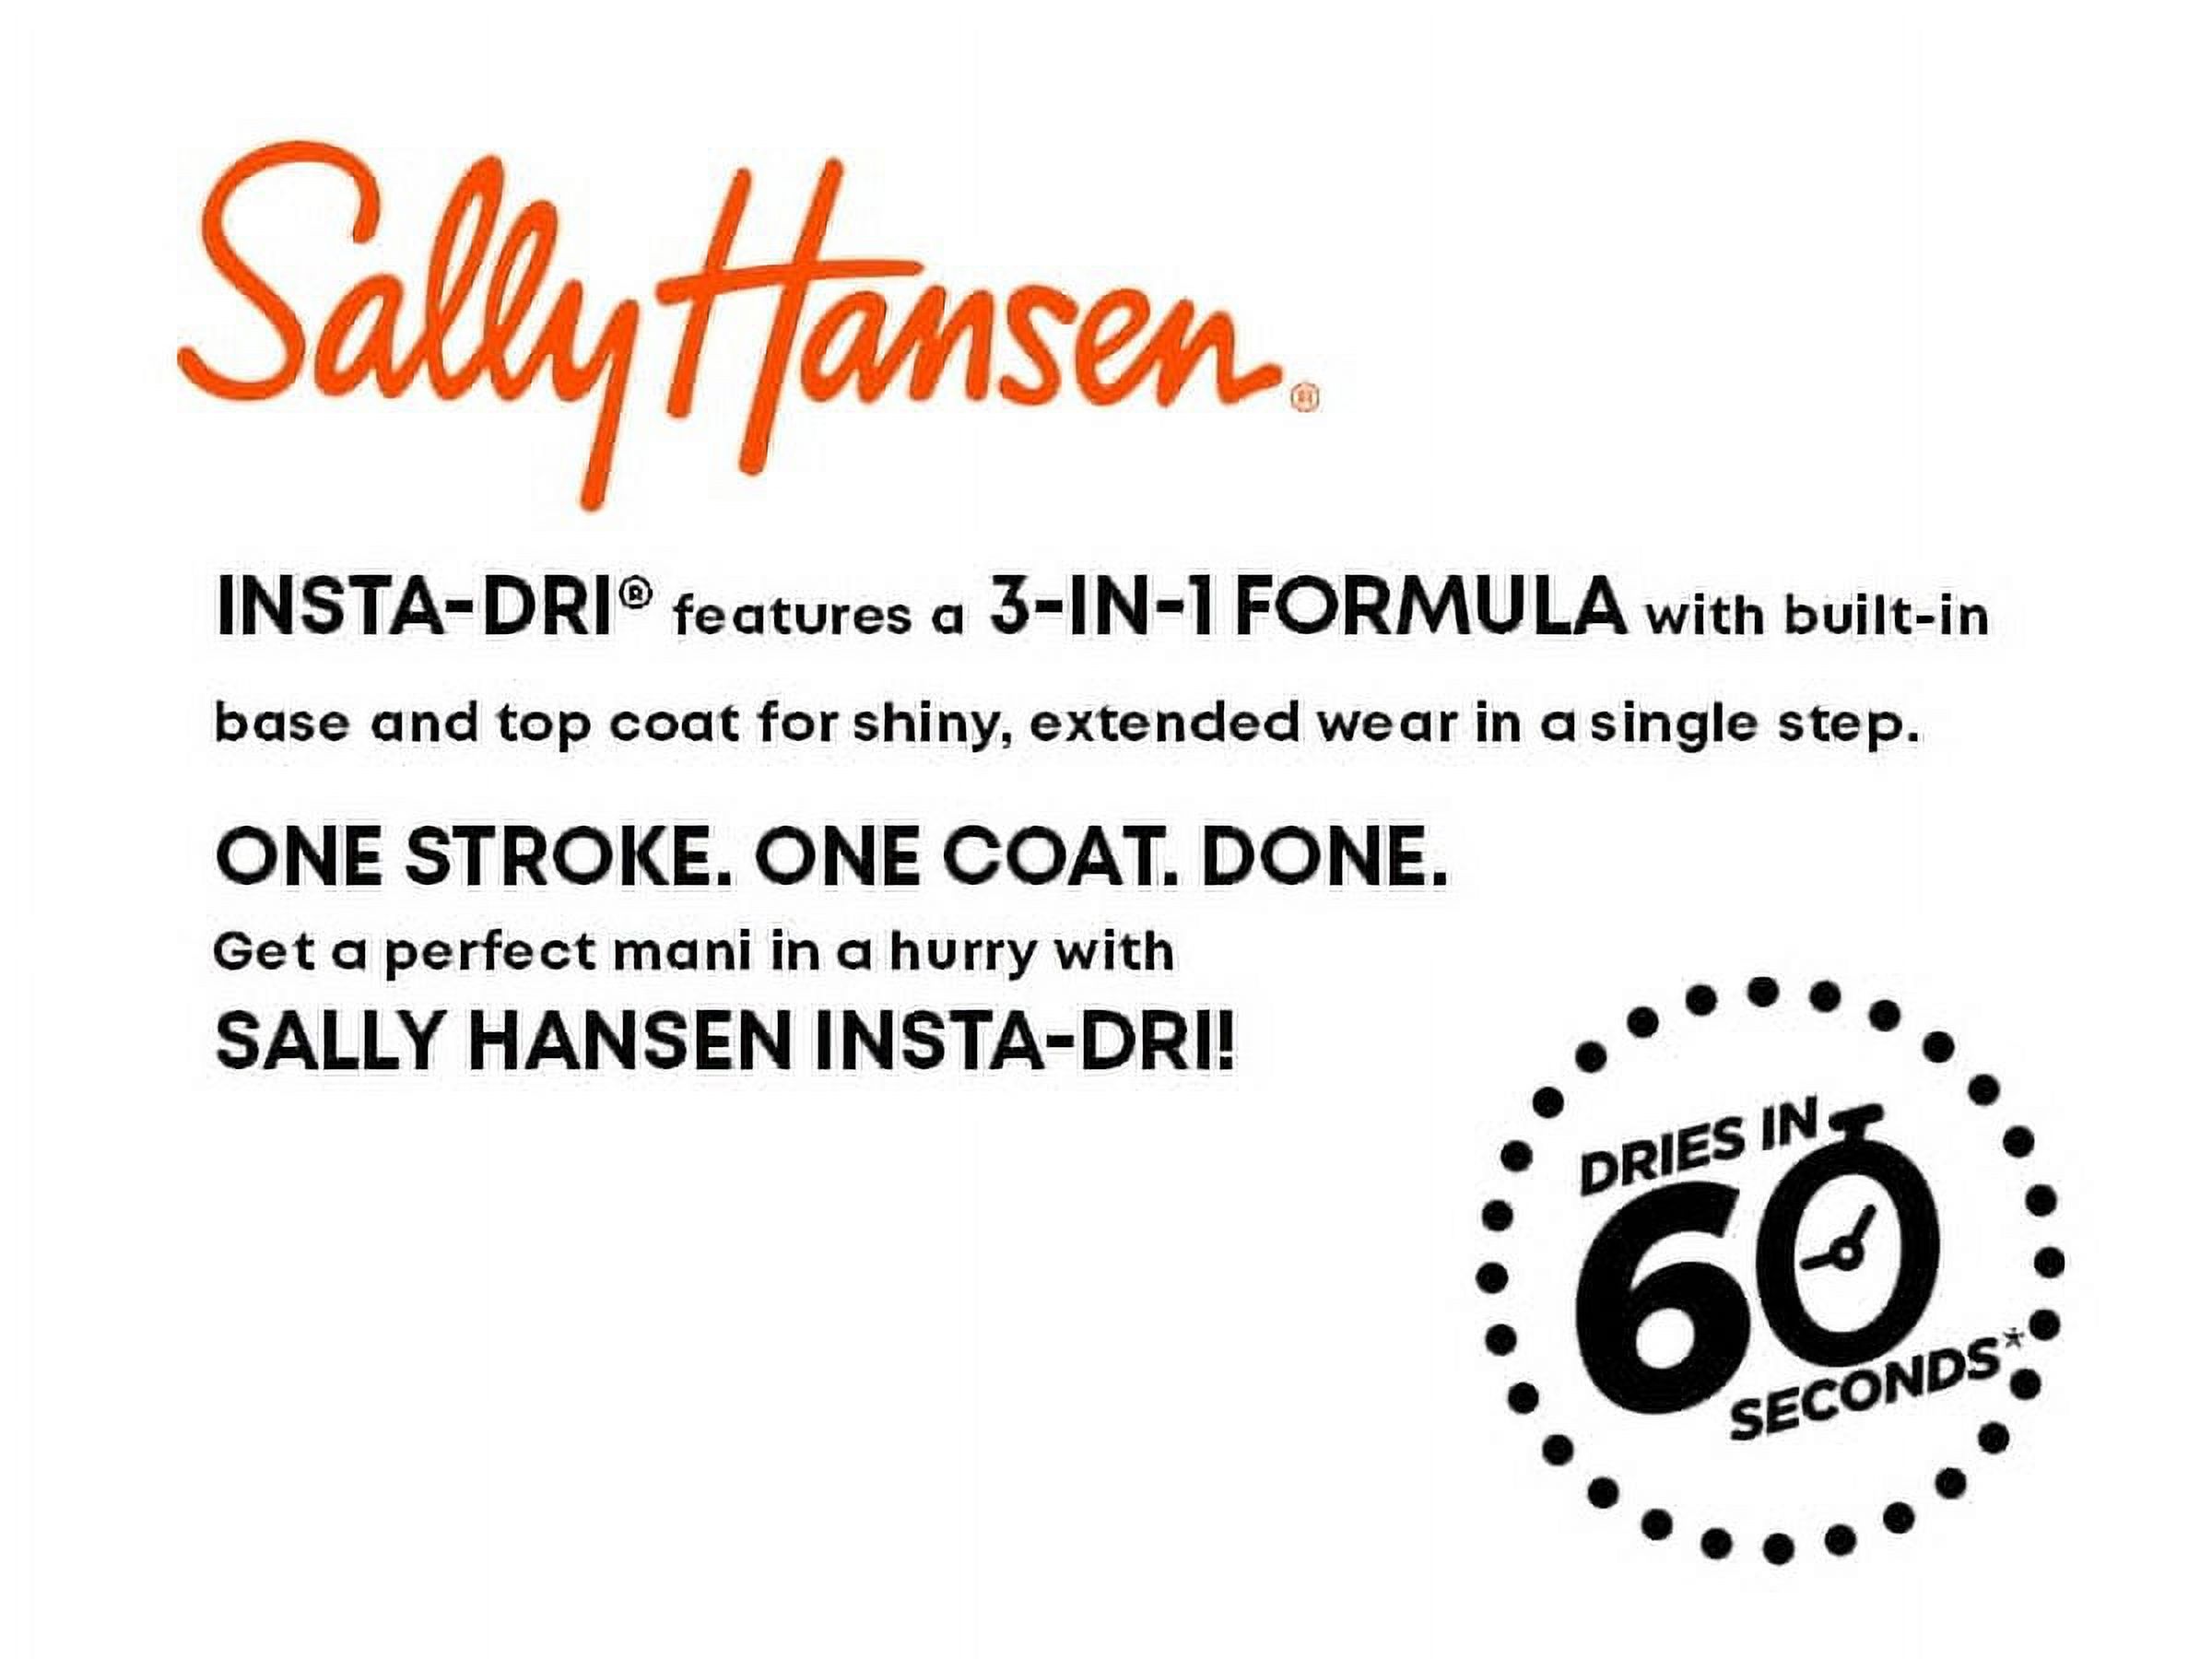 Sally Hansen Insta-Dri Nail Polish, White on Time, 0.31 fl oz, Quick Dry - image 15 of 15